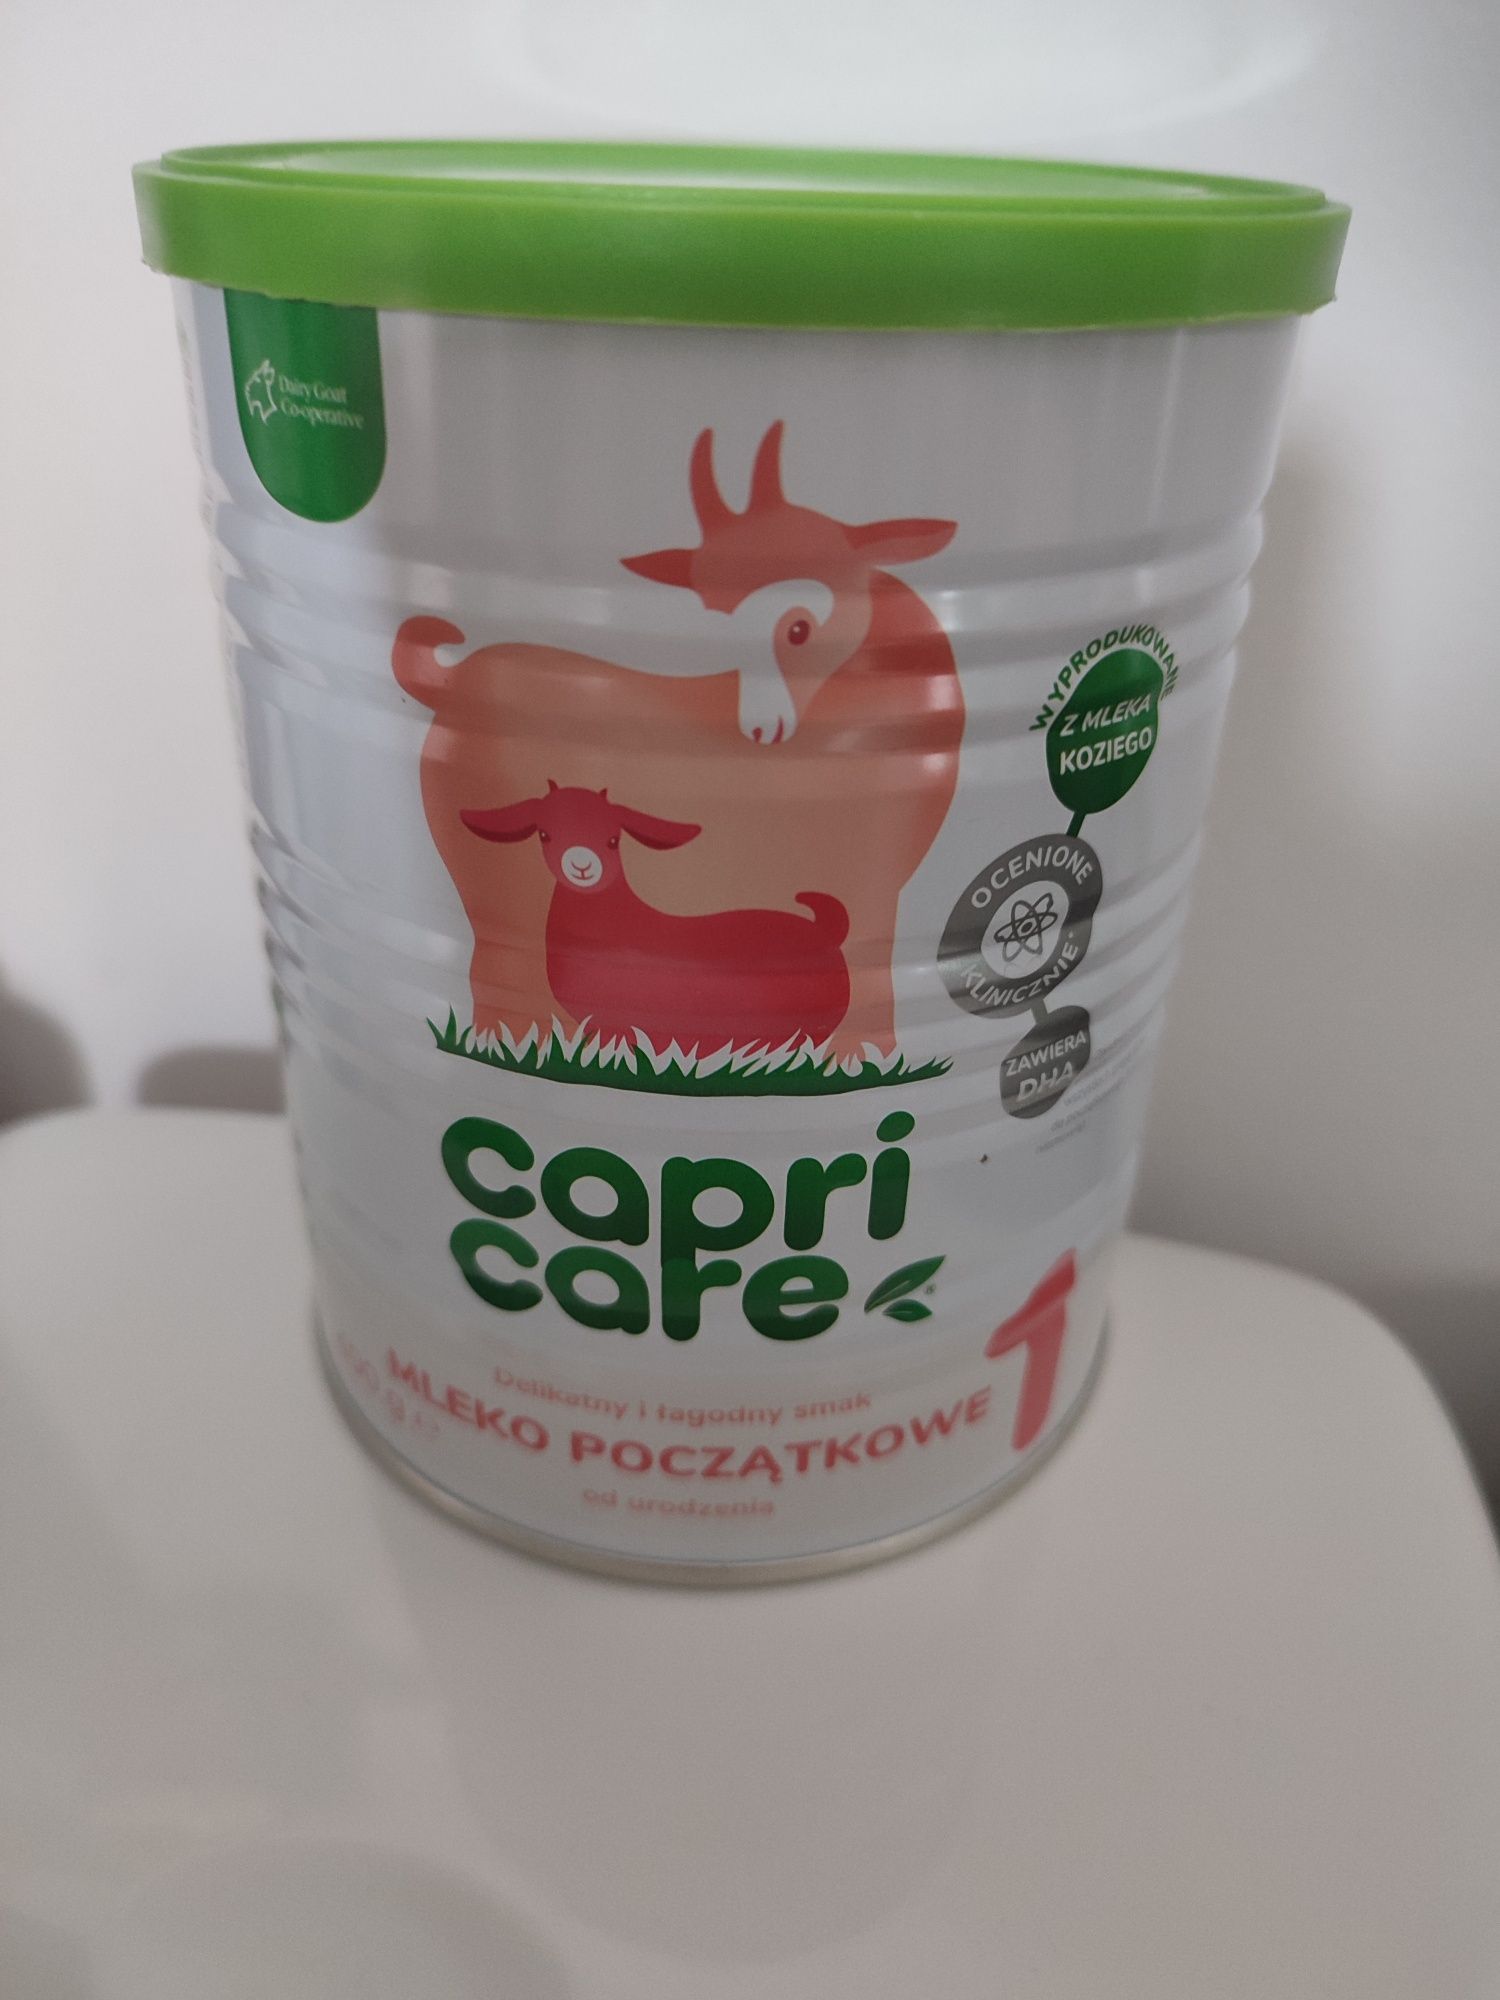 Mleko początkowe 1 Capri Care, pojemność 400 g